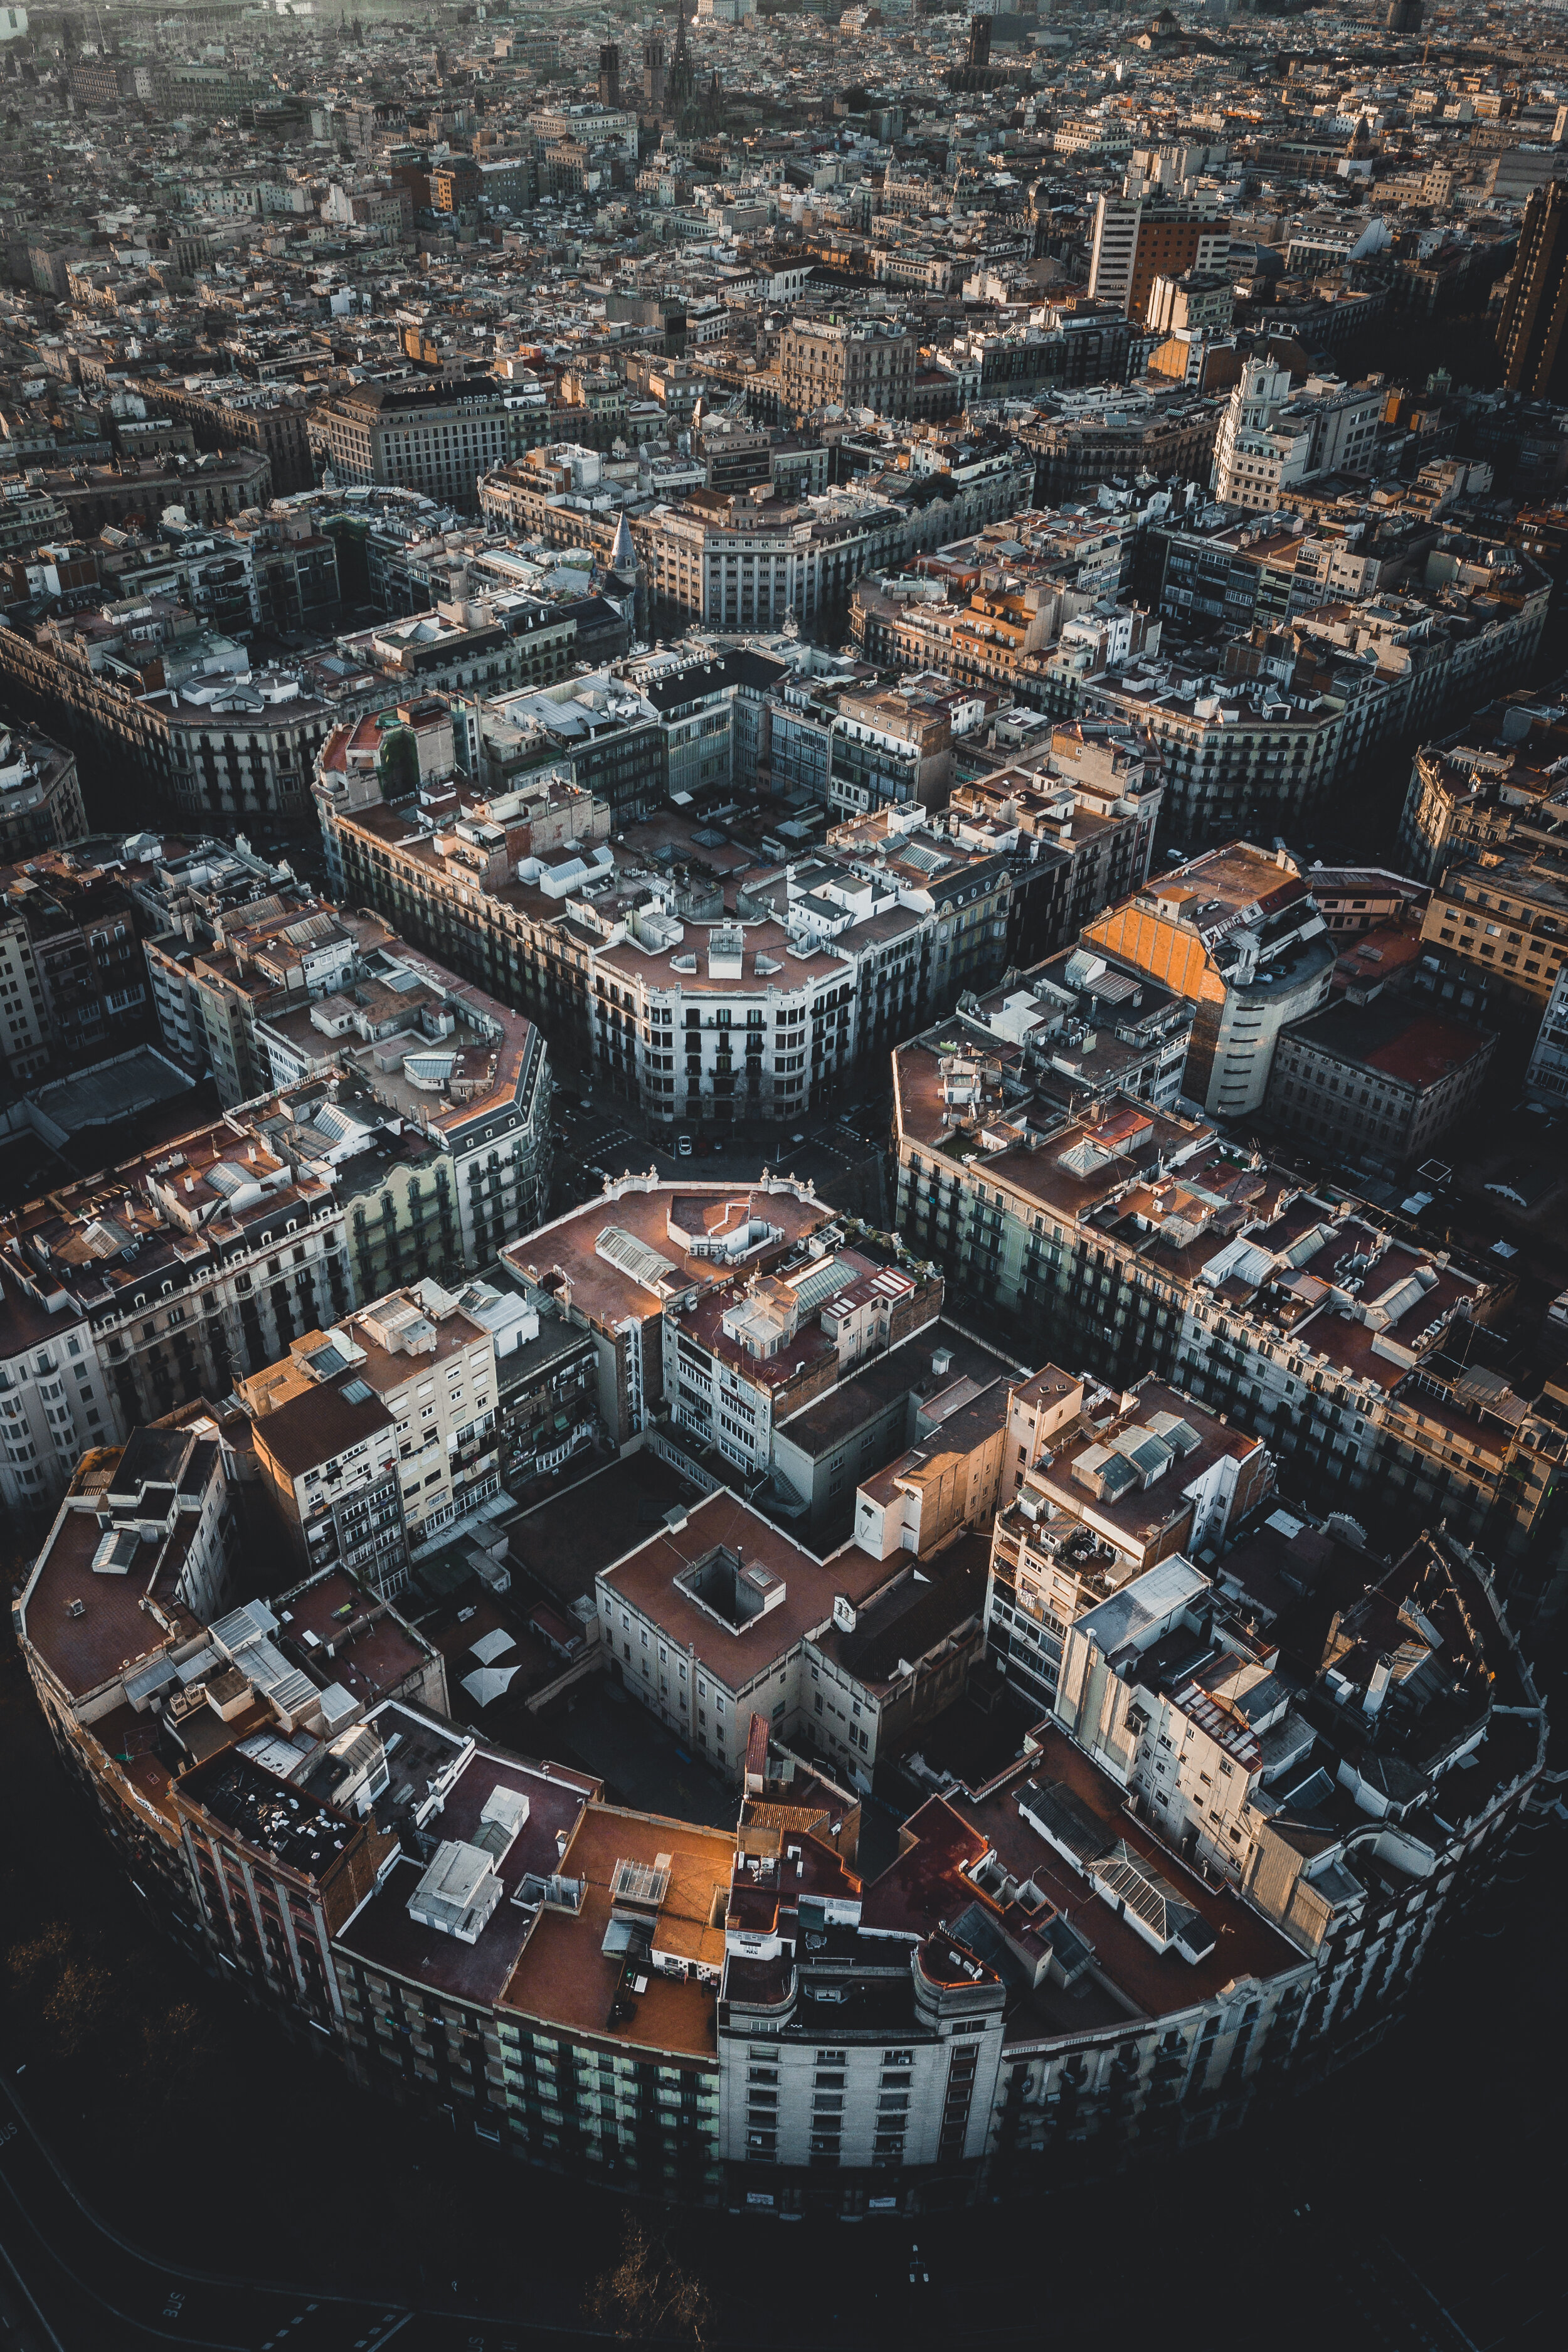 Barcelona_01_Aerial_fullRes.jpg